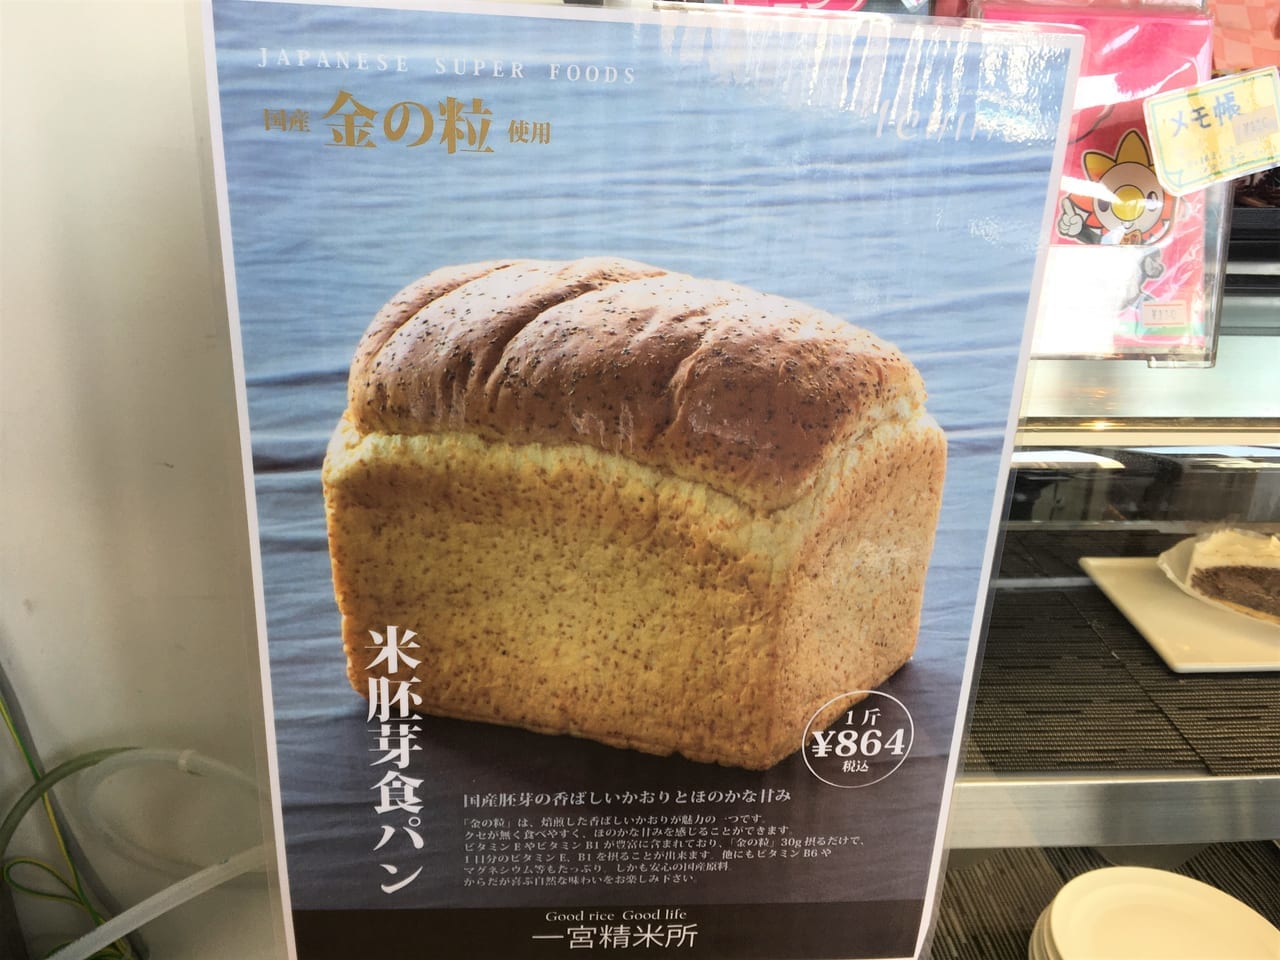 カフェレストランICHIMOで販売開始された国産の米胚芽食パンの説明